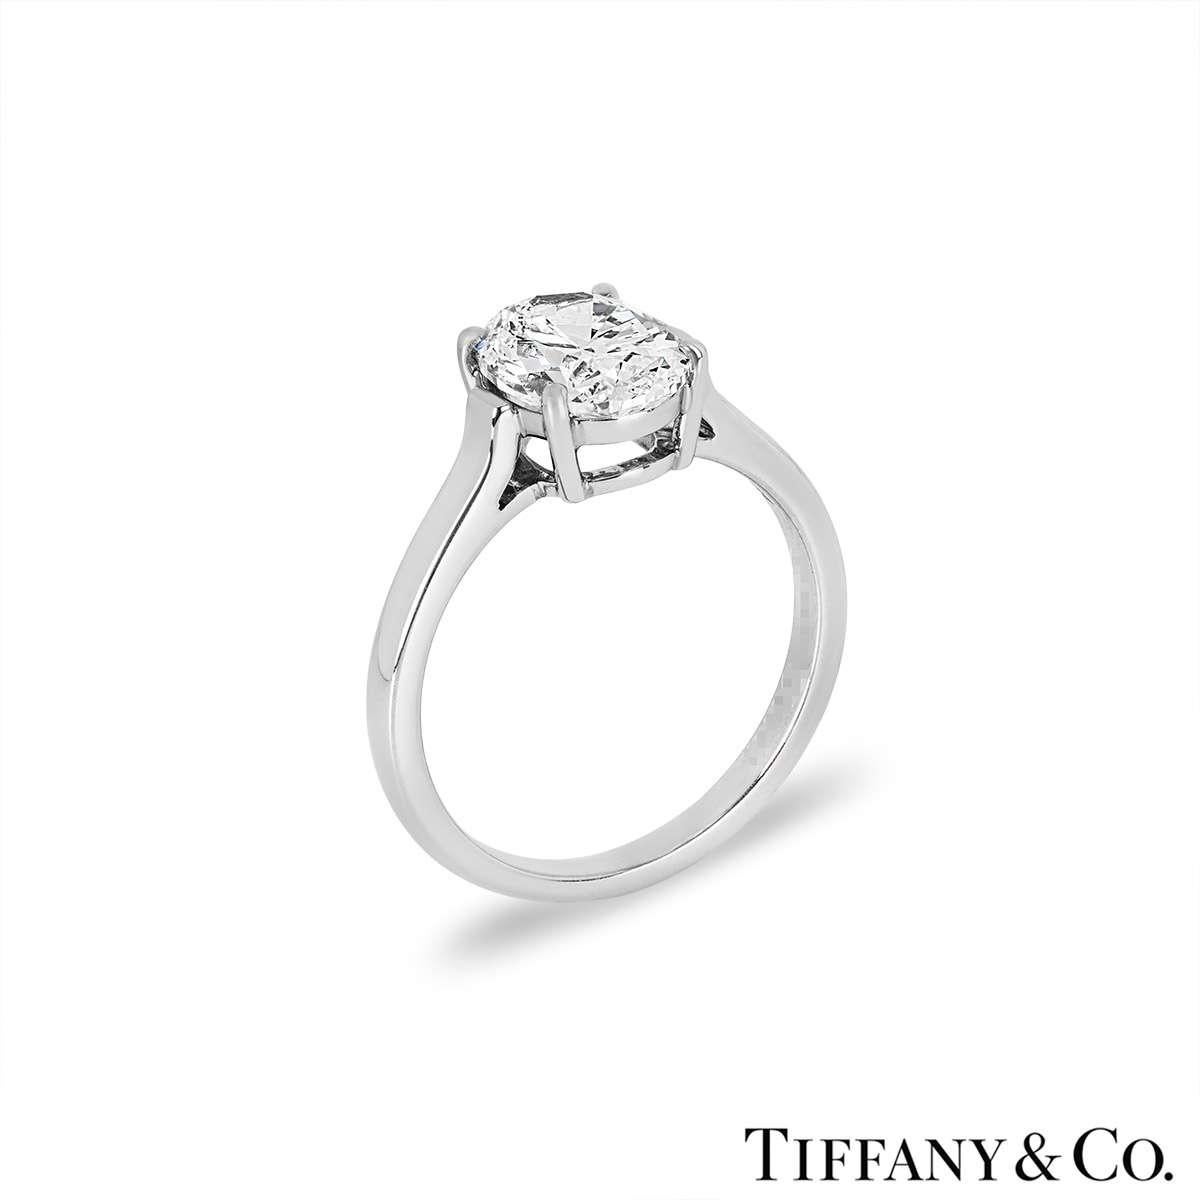 Une superbe bague en platine sertie de diamants de Tiffany & Co. La bague comprend un diamant de taille ovale dans une monture à 4 griffes, d'un poids de 2,06ct, de couleur D et de pureté VVS2. La bague est de taille UK M, EU 52 et US 6 mais peut